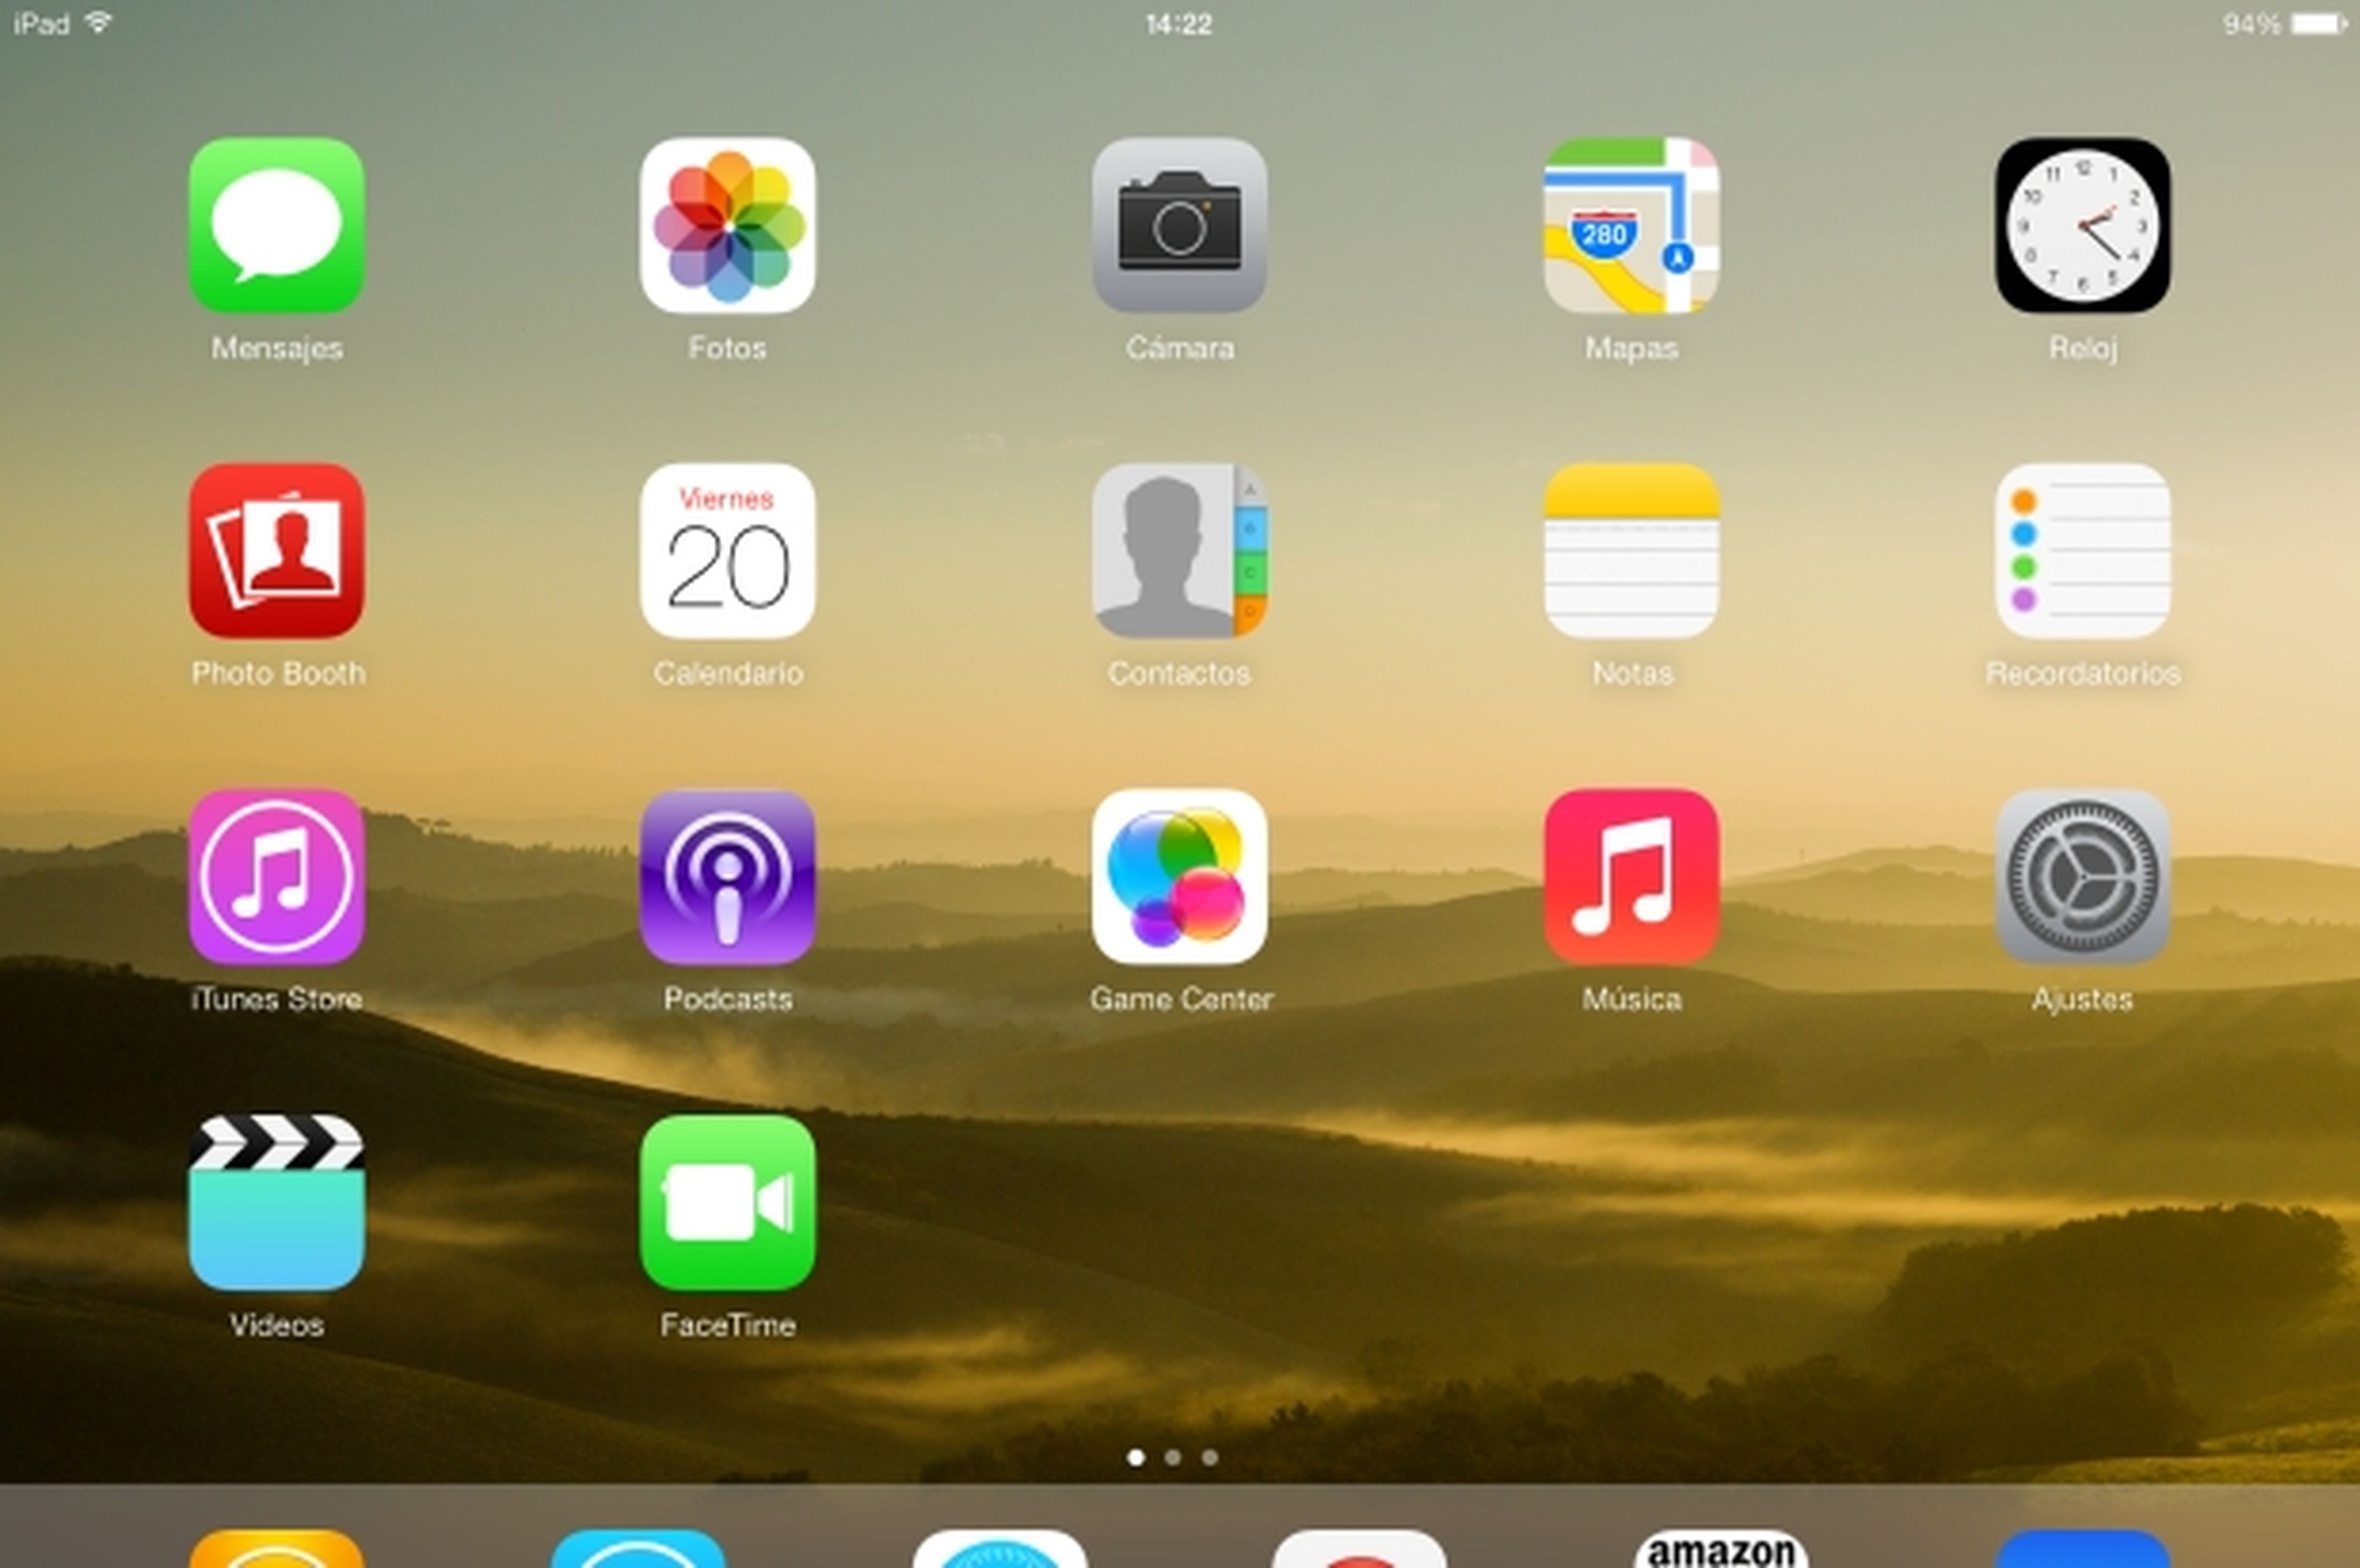 Lanzada actualización iOS 7.0.1